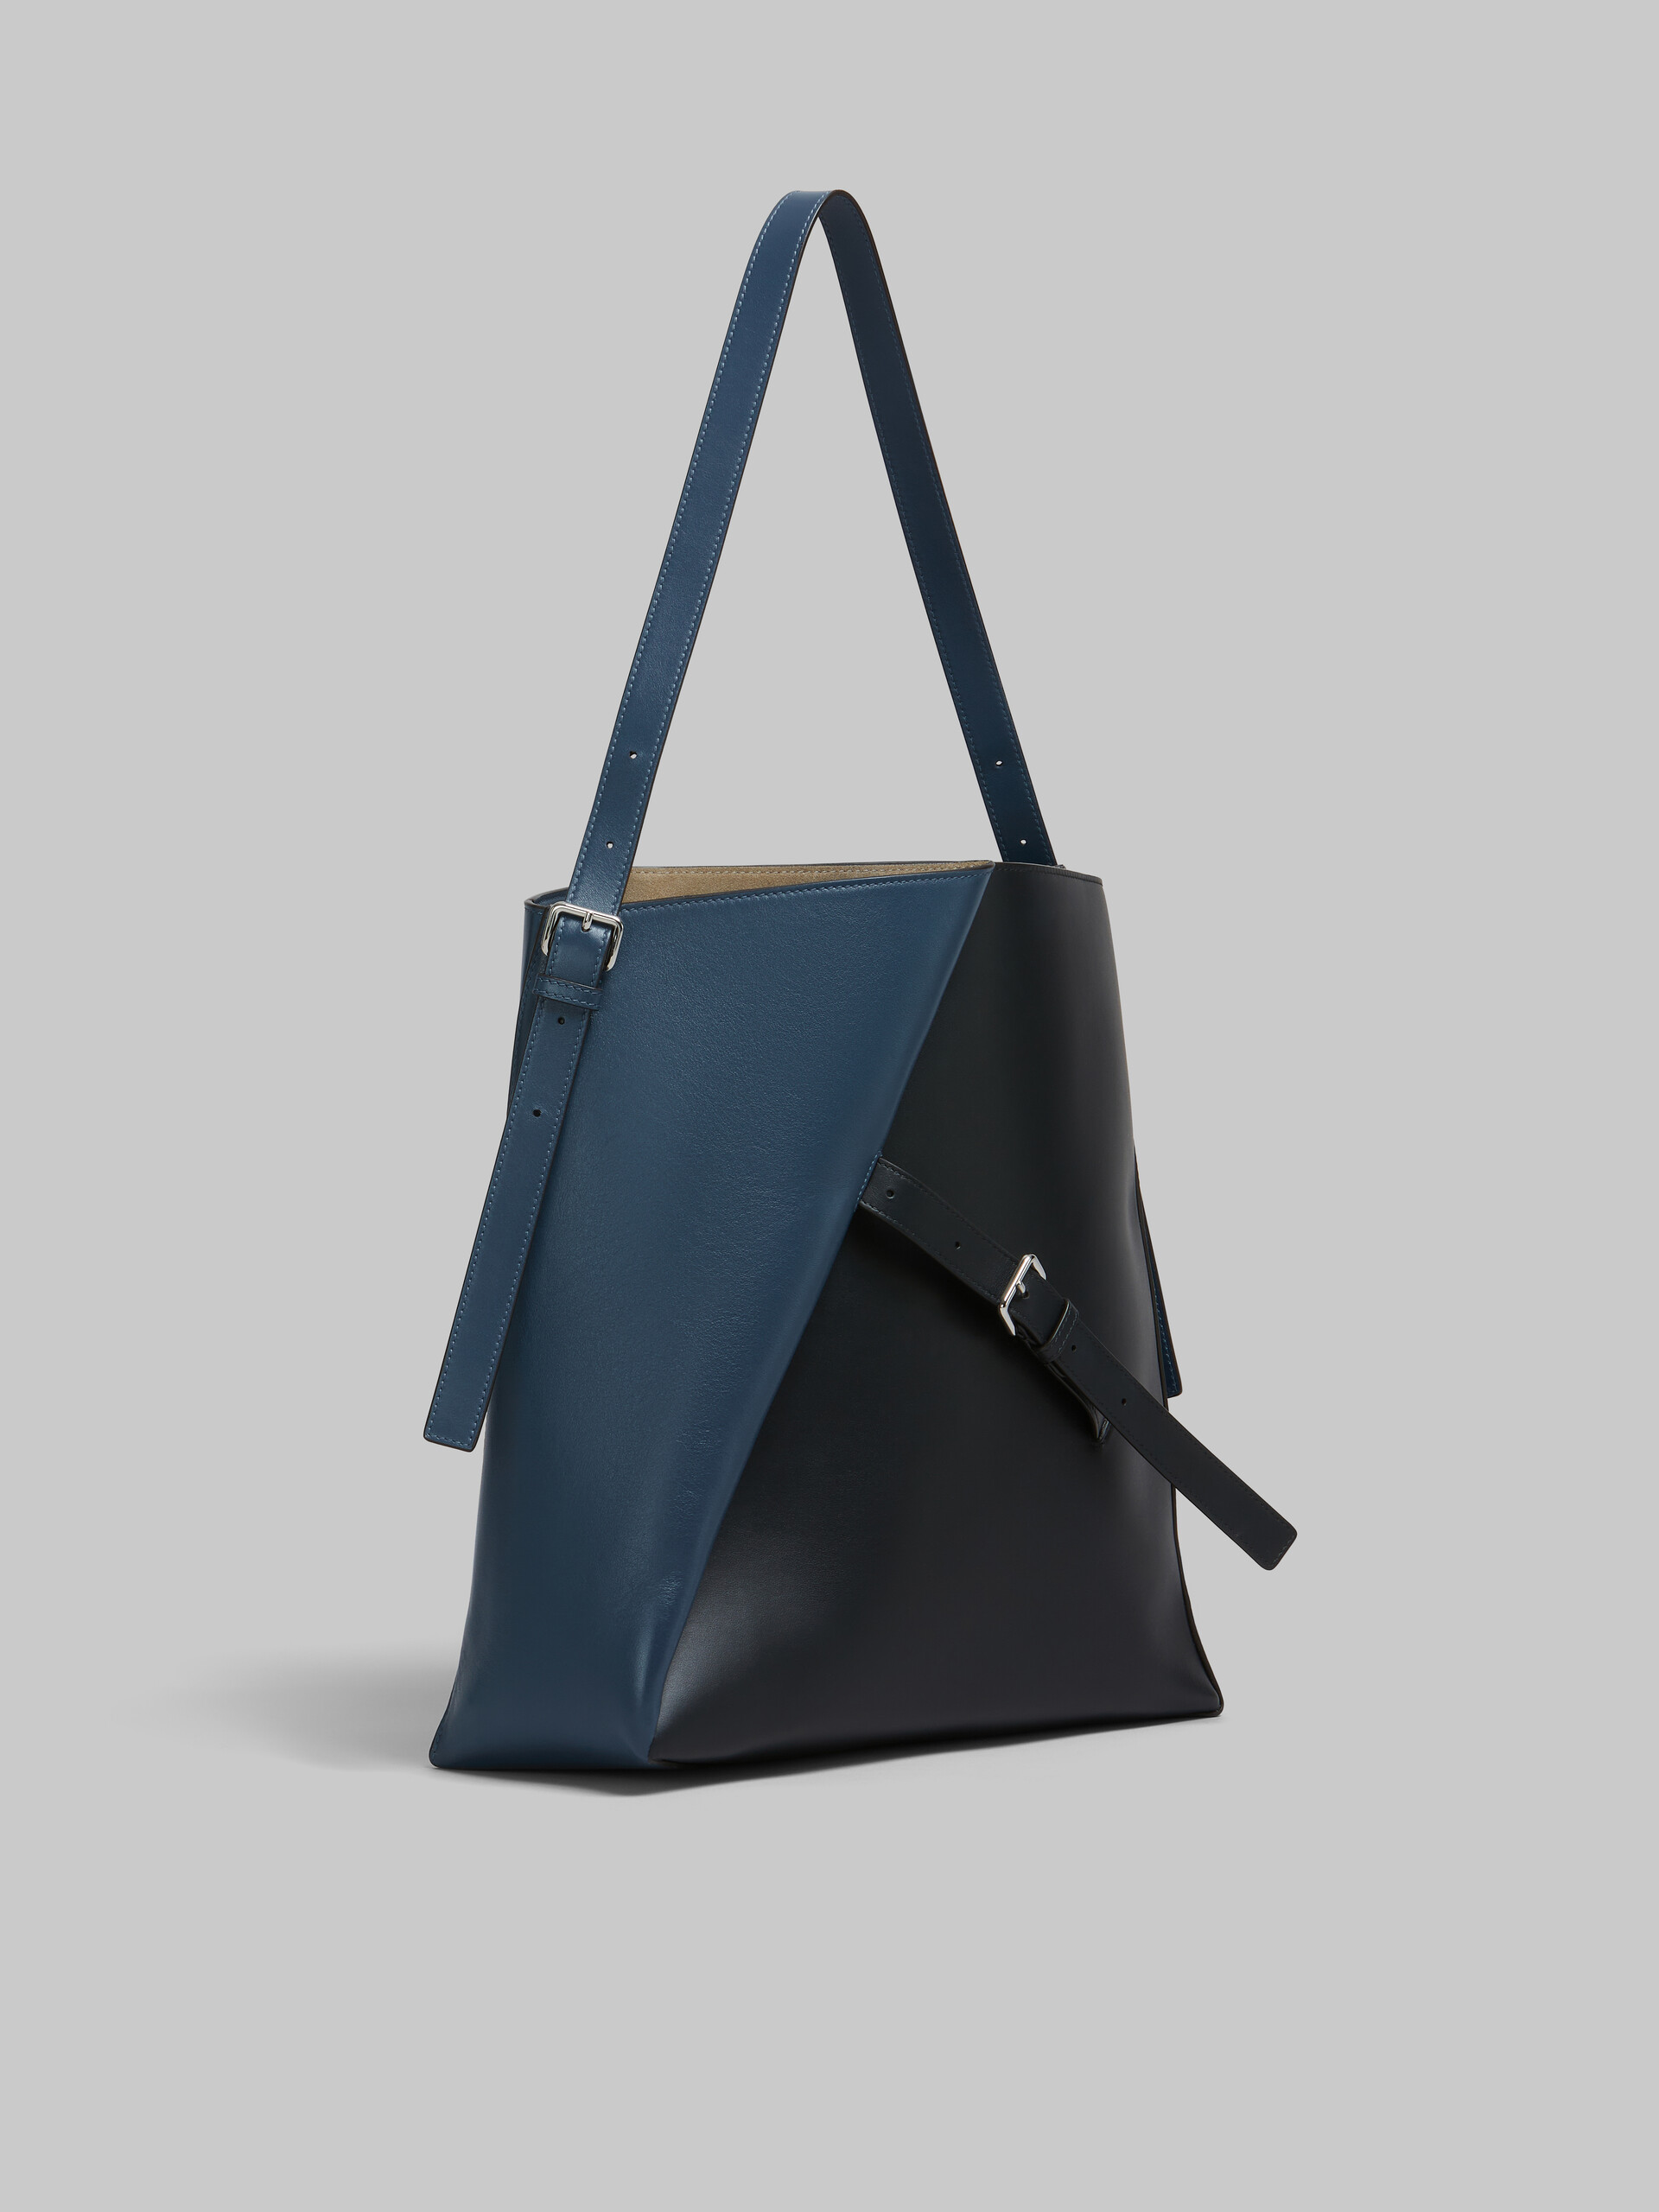 Deep blue and black leather Reverse hobo bag - Shoulder Bag - Image 6